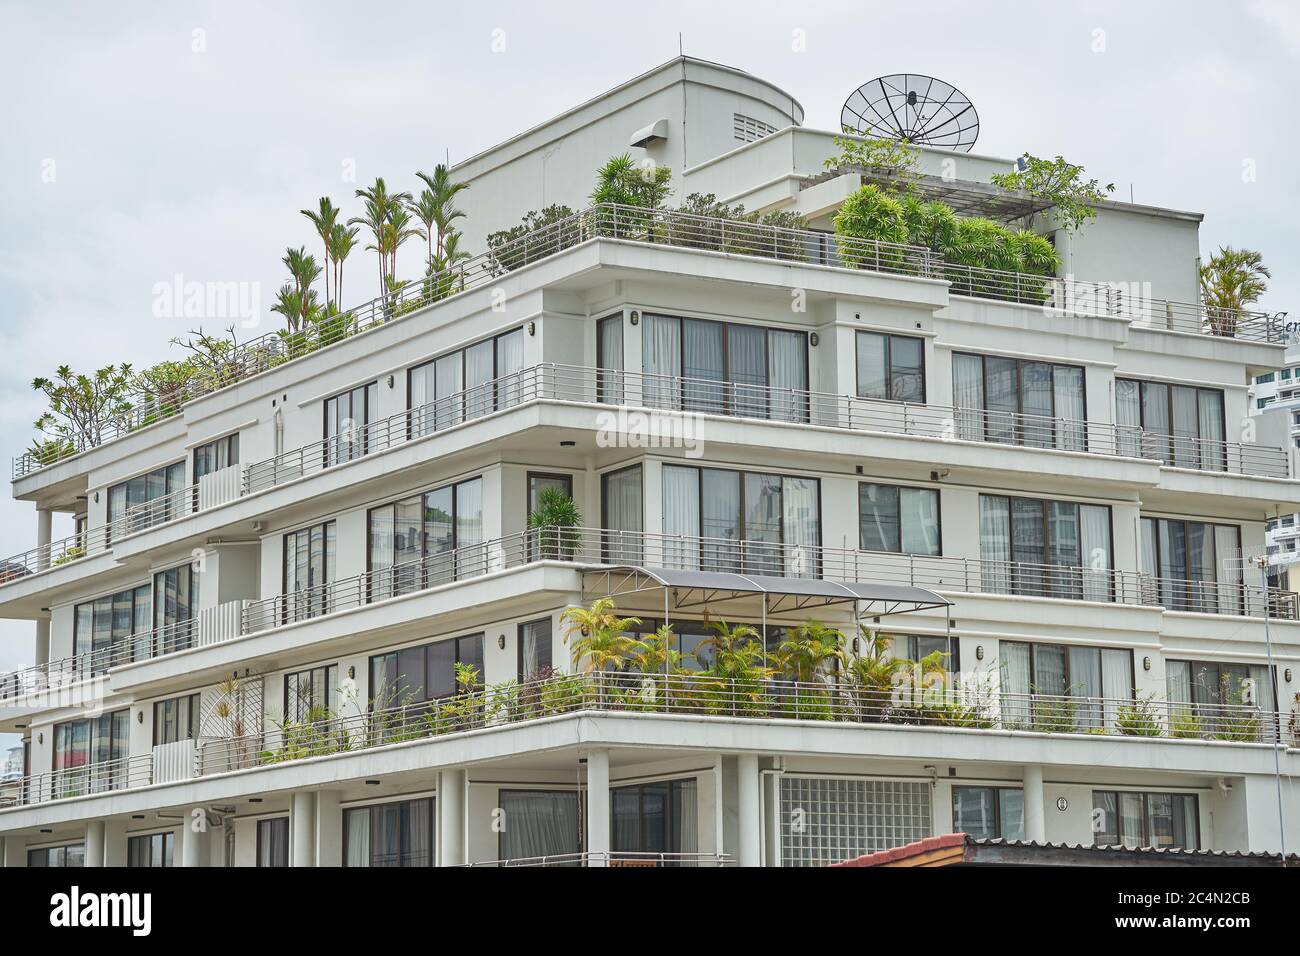 Un bell'edificio con giardini sul tetto e balconi. Foto Stock